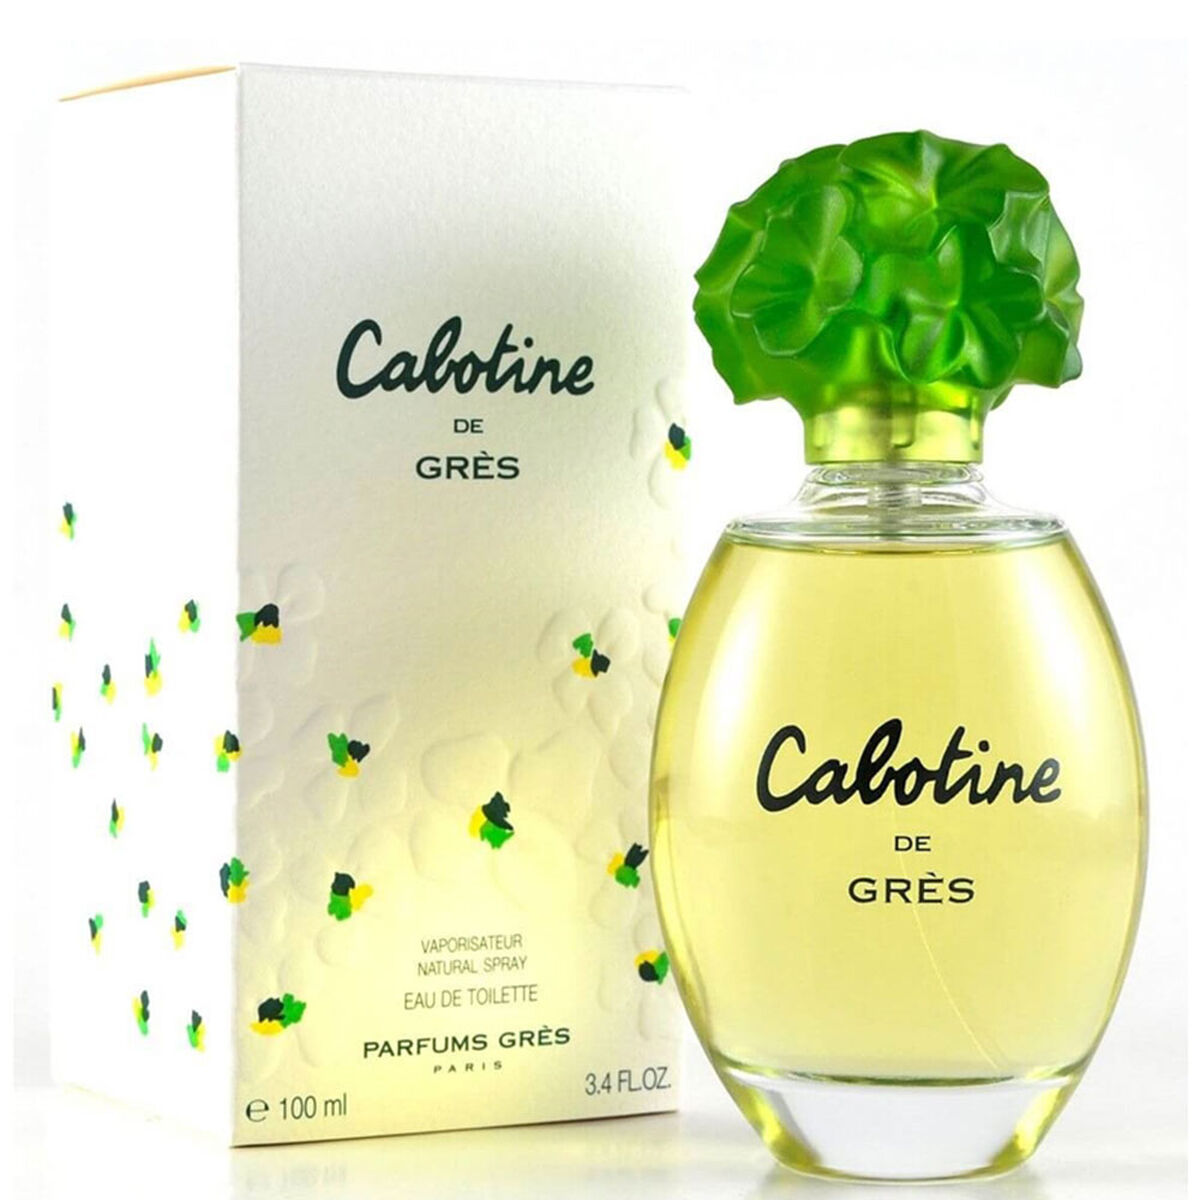 Perfume Cabotine de Gress EDT 100 ml